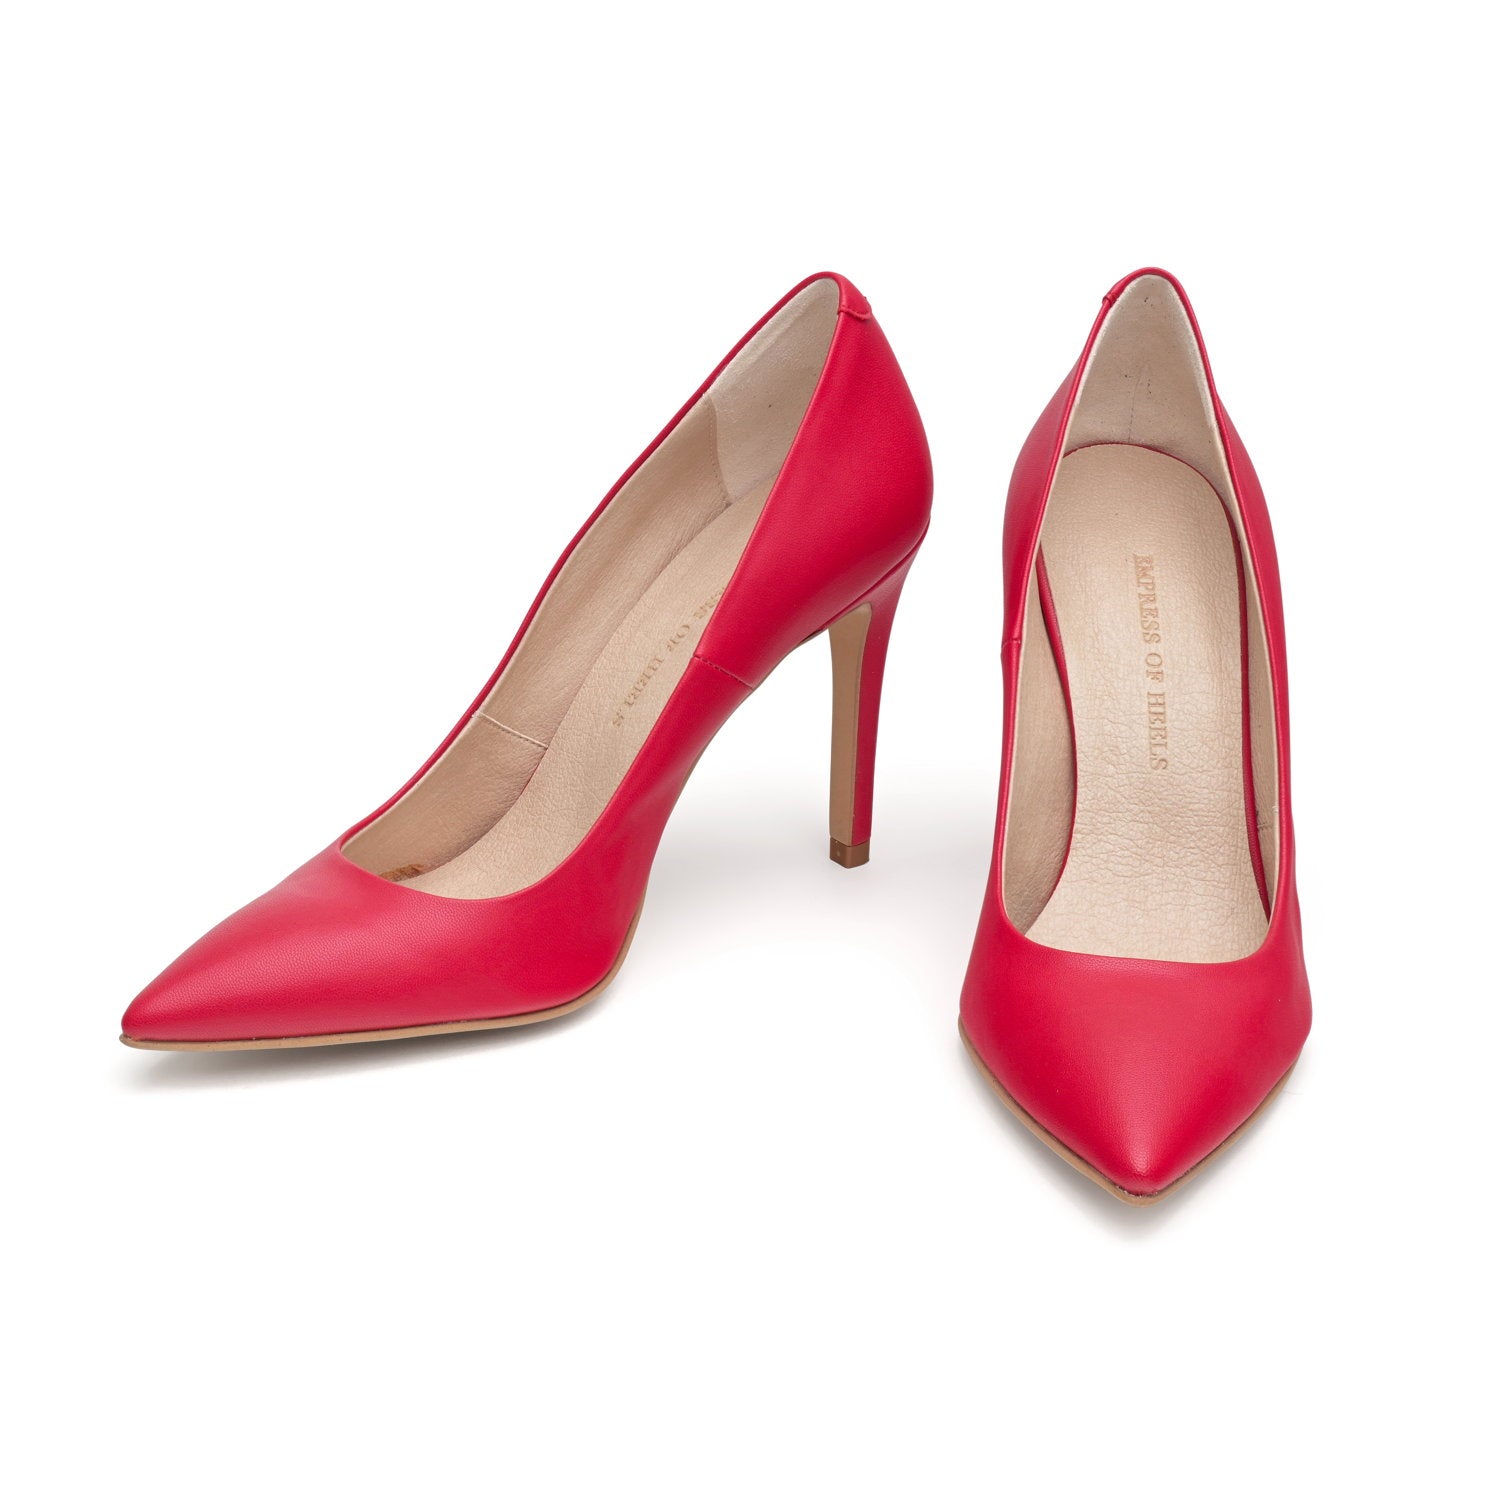 The Red - vegan 100mm heels